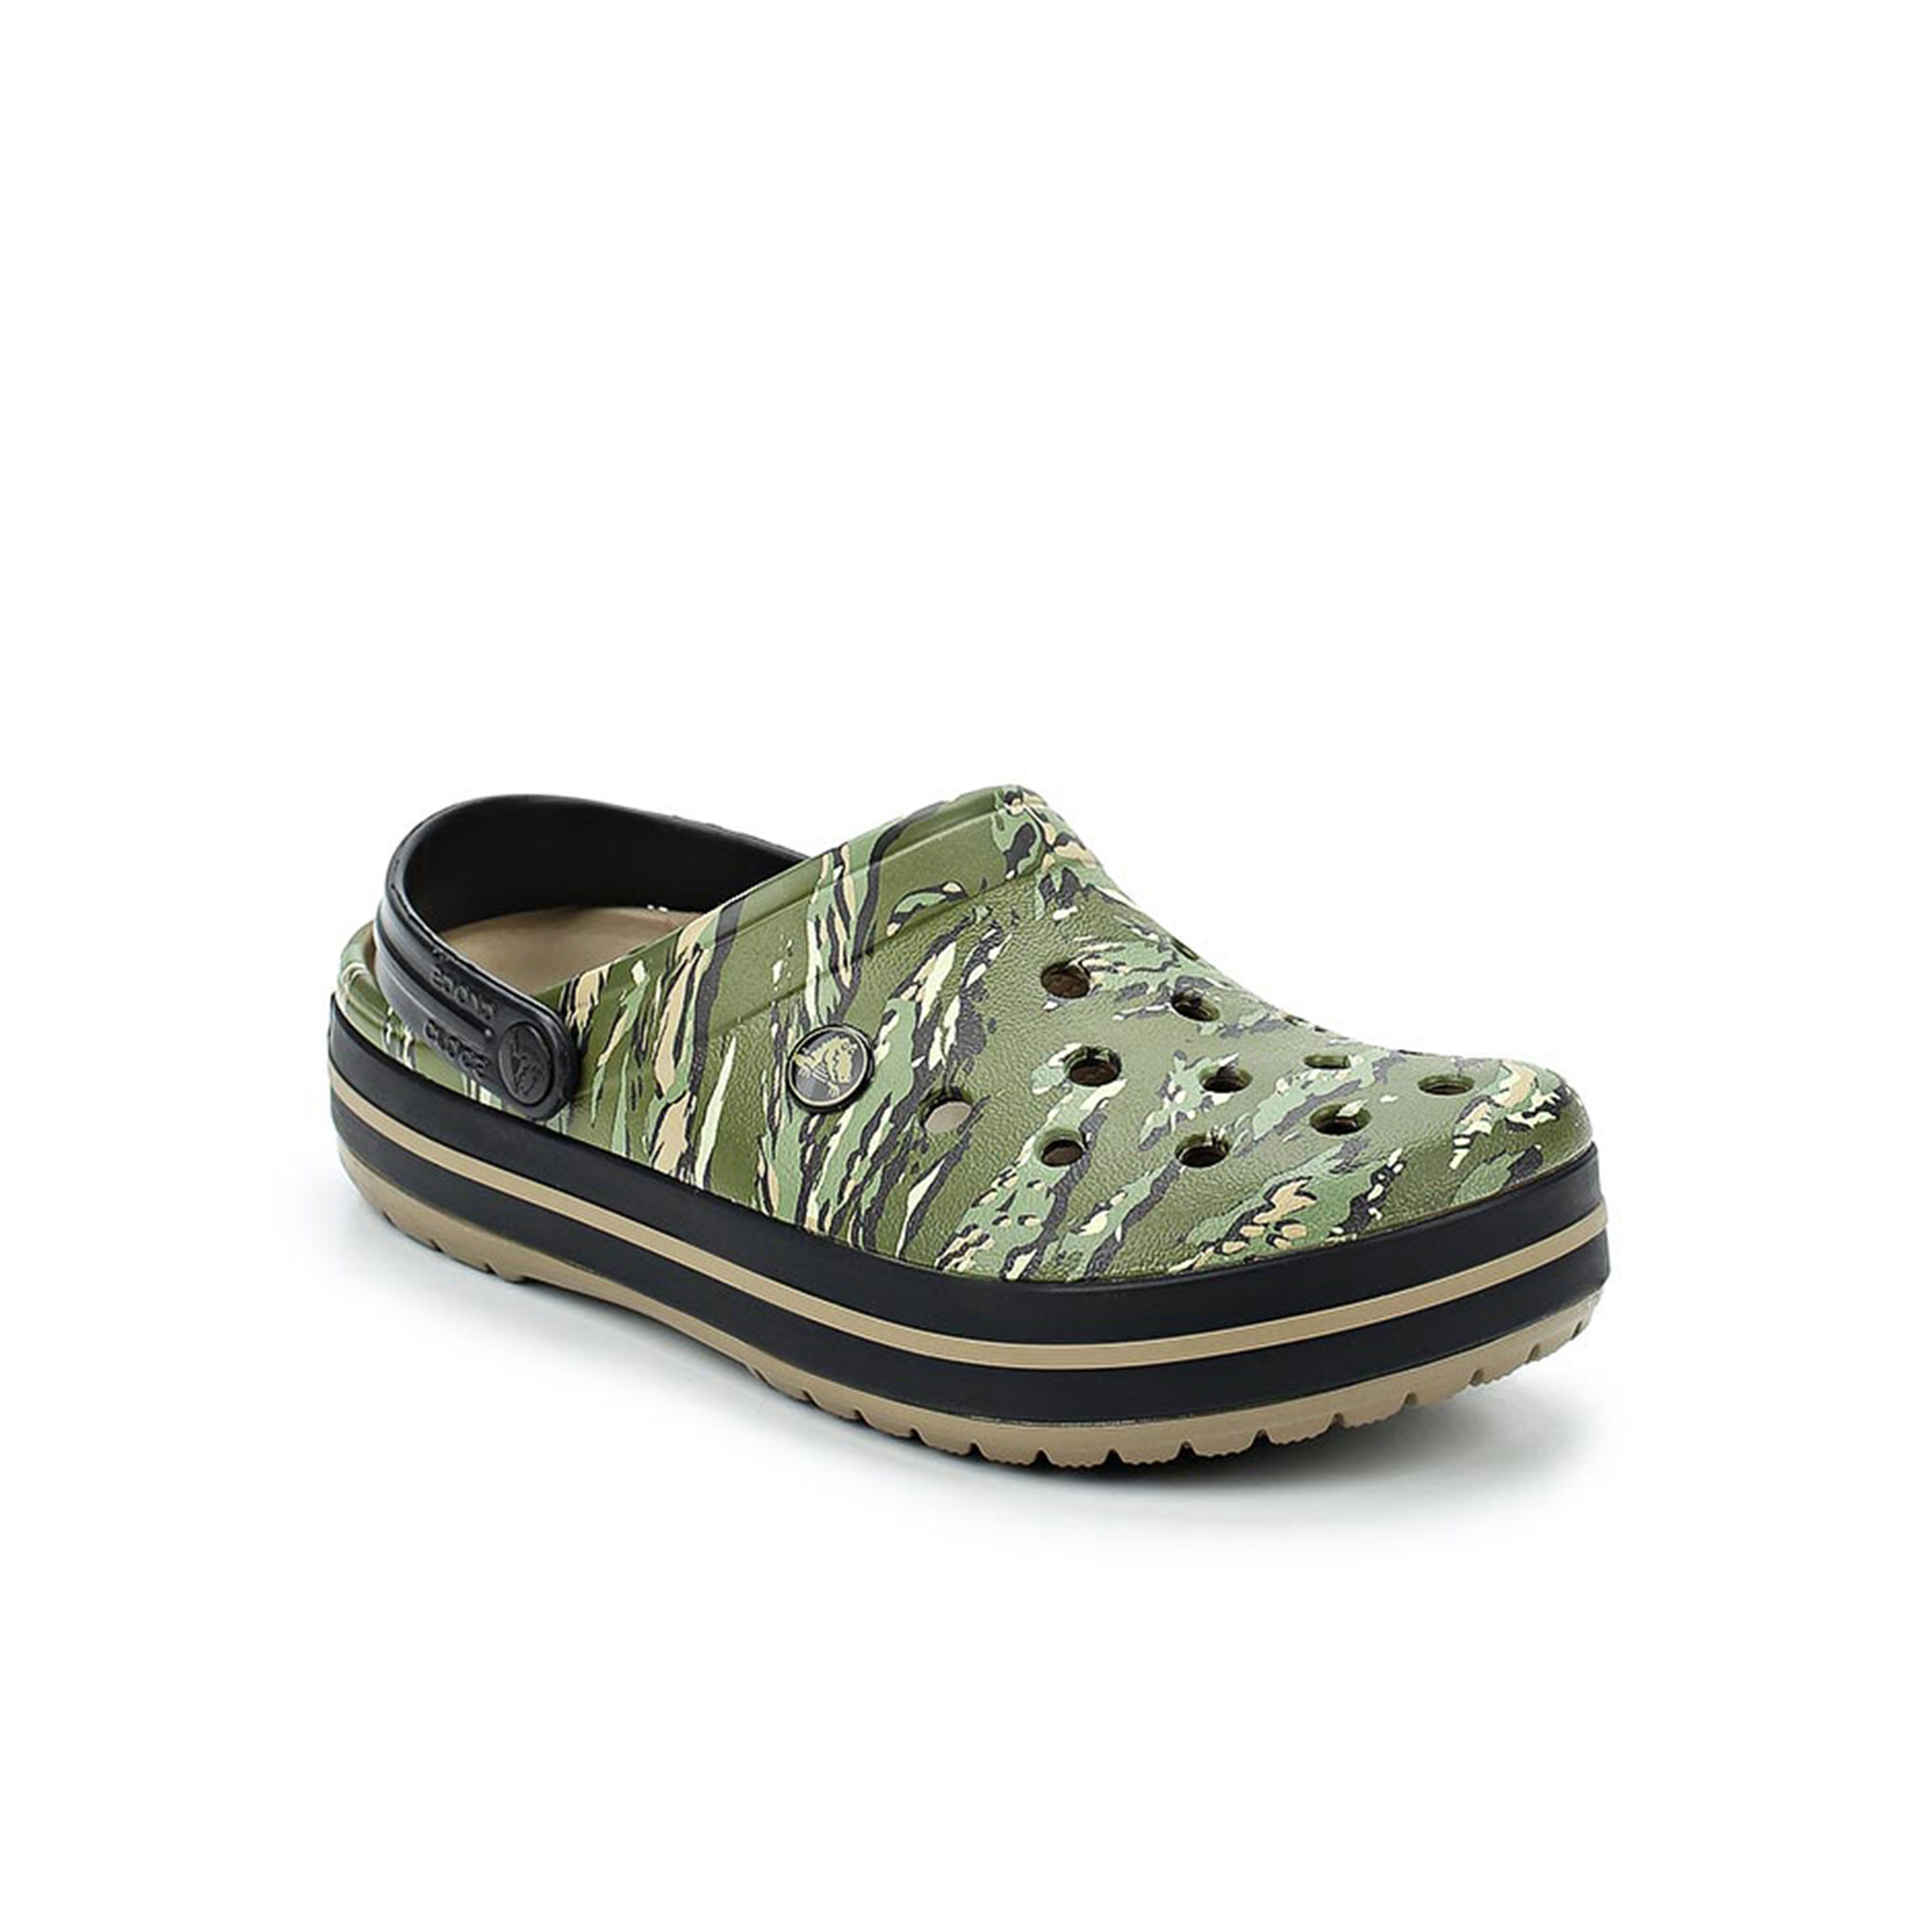 Crocband Graphic Clog Crocs, размер 39-40, цвет зеленый CR204553 - фото 2